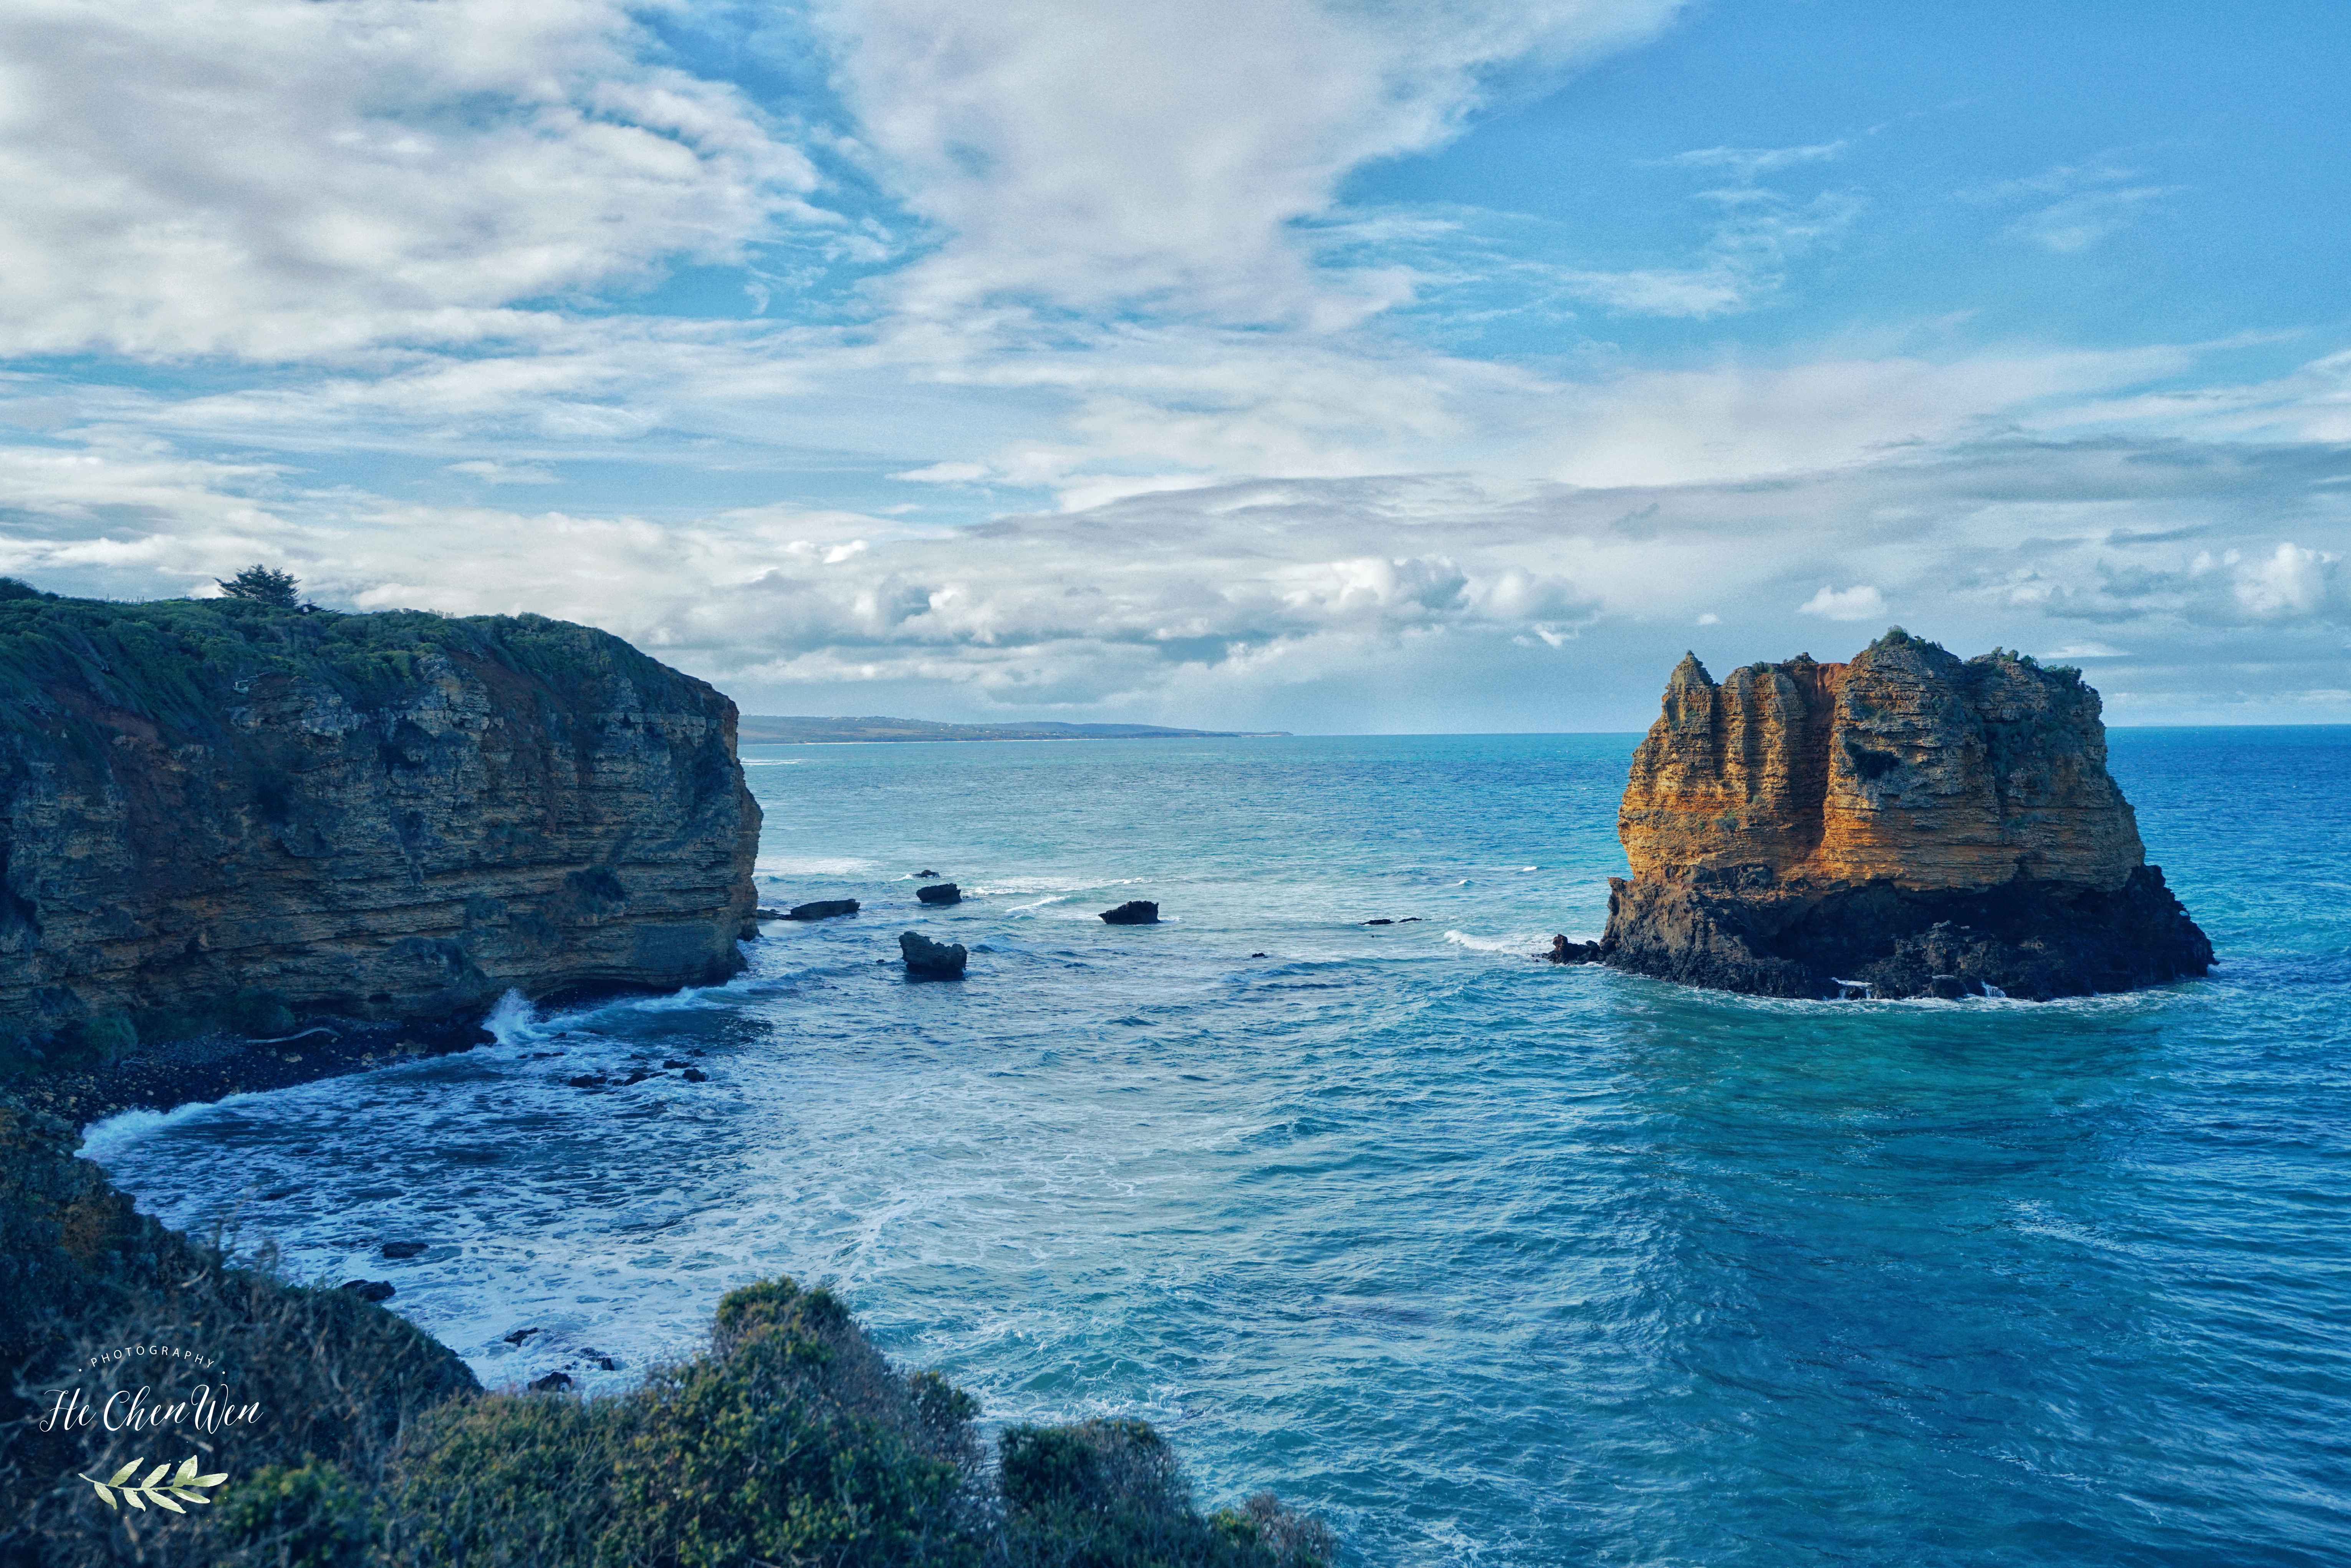 澳洲最古老的灯塔之一大洋路上最值得打卡的景点眺望碧海蓝天